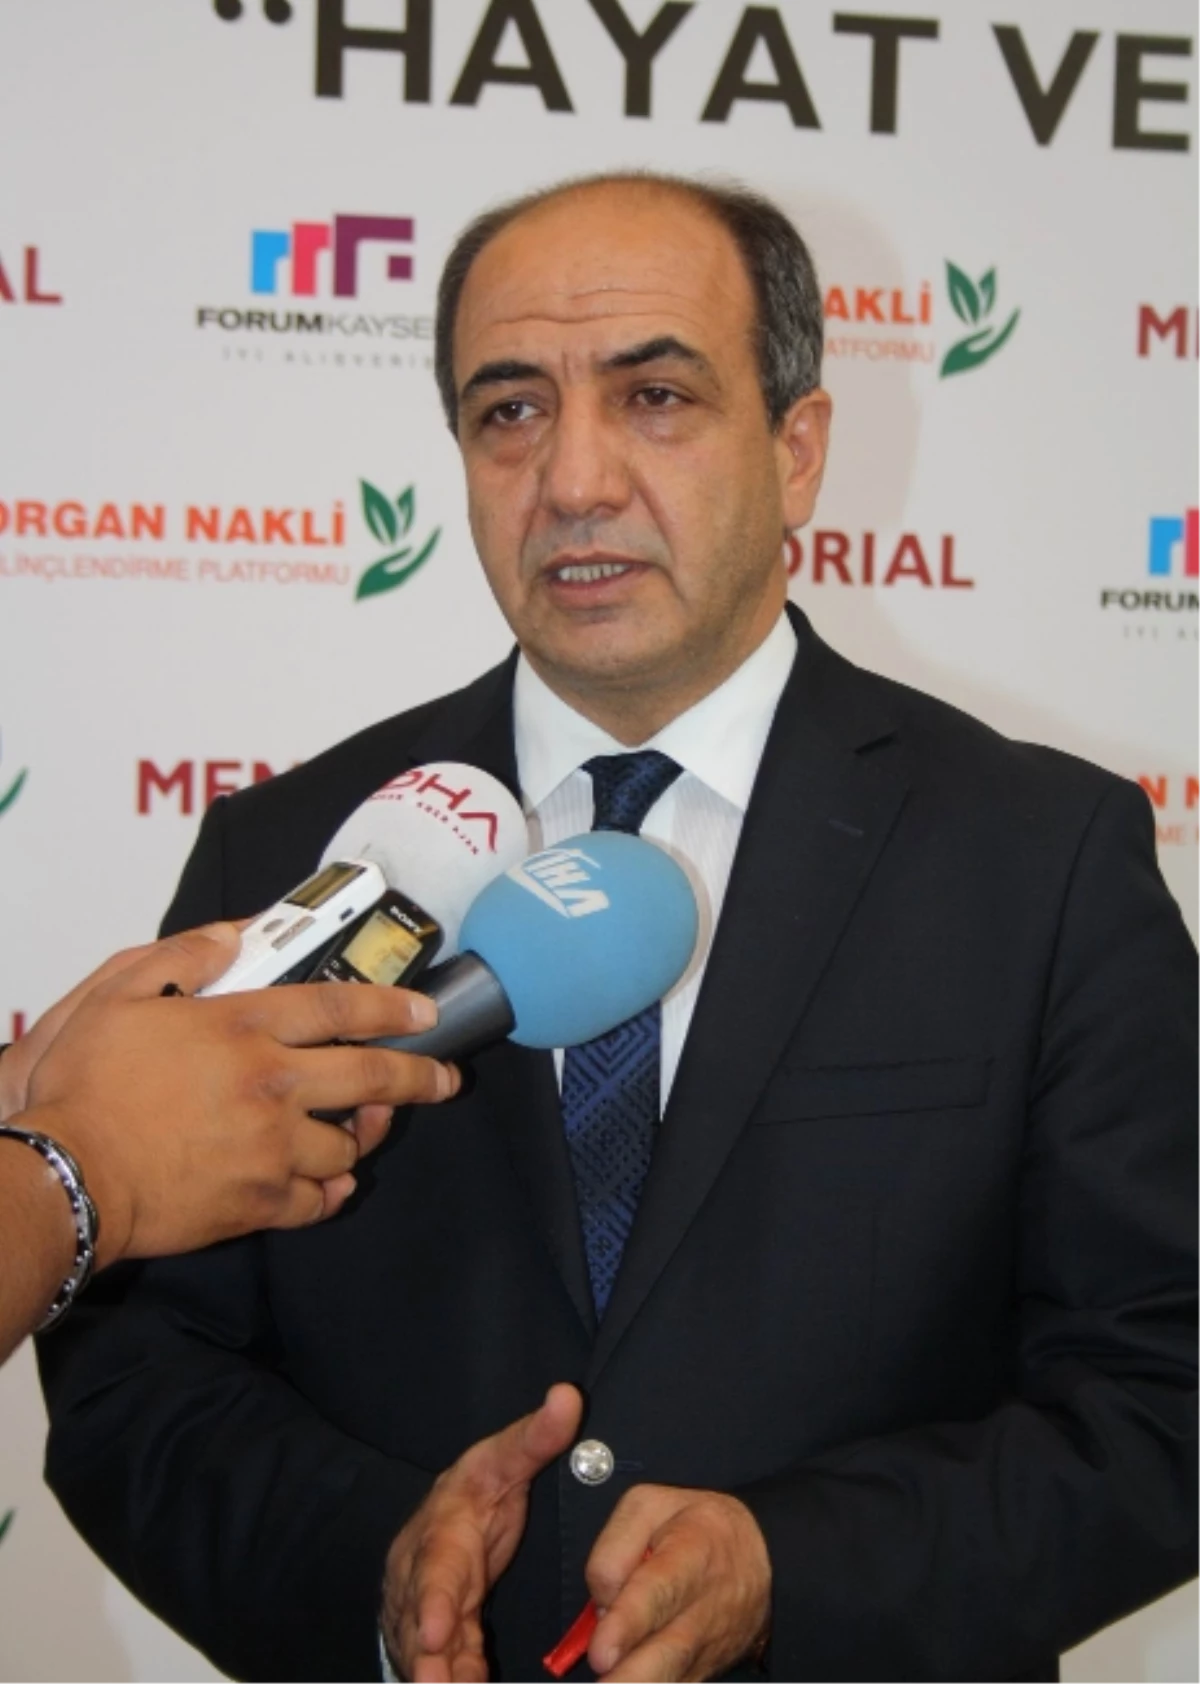 Organ Nakli Bilinçlendirme Platformu Başkanı Prof. Dr. Yalçın Polat Açıklaması